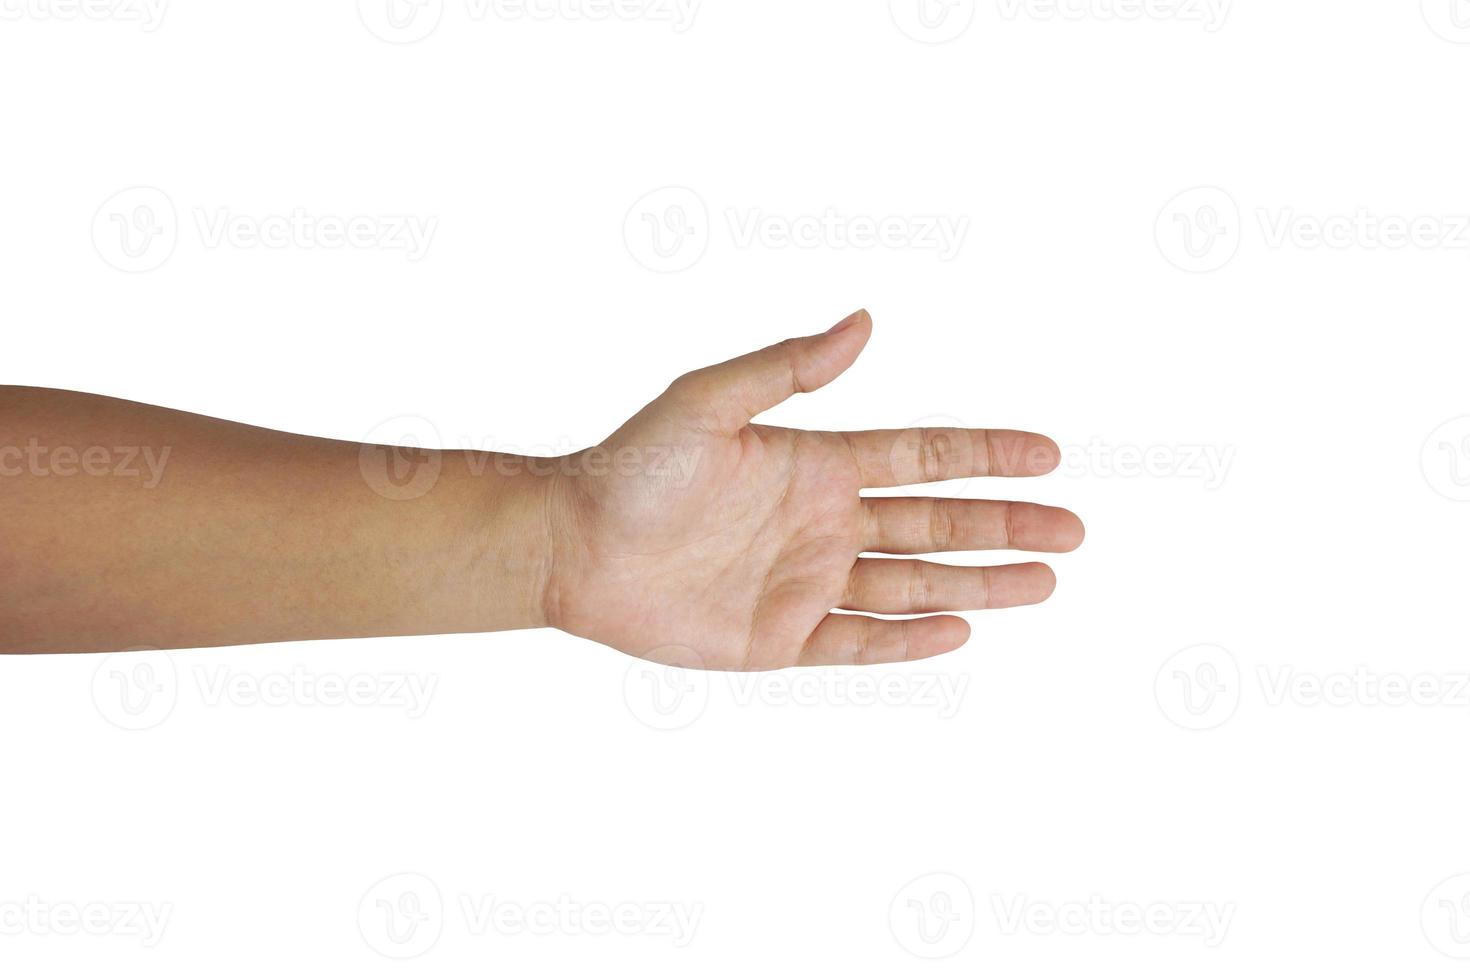 bras féminin, y compris les doigts de la main et le pouce, la partie du corps isolée sur fond blanc avec un tracé de détourage photo